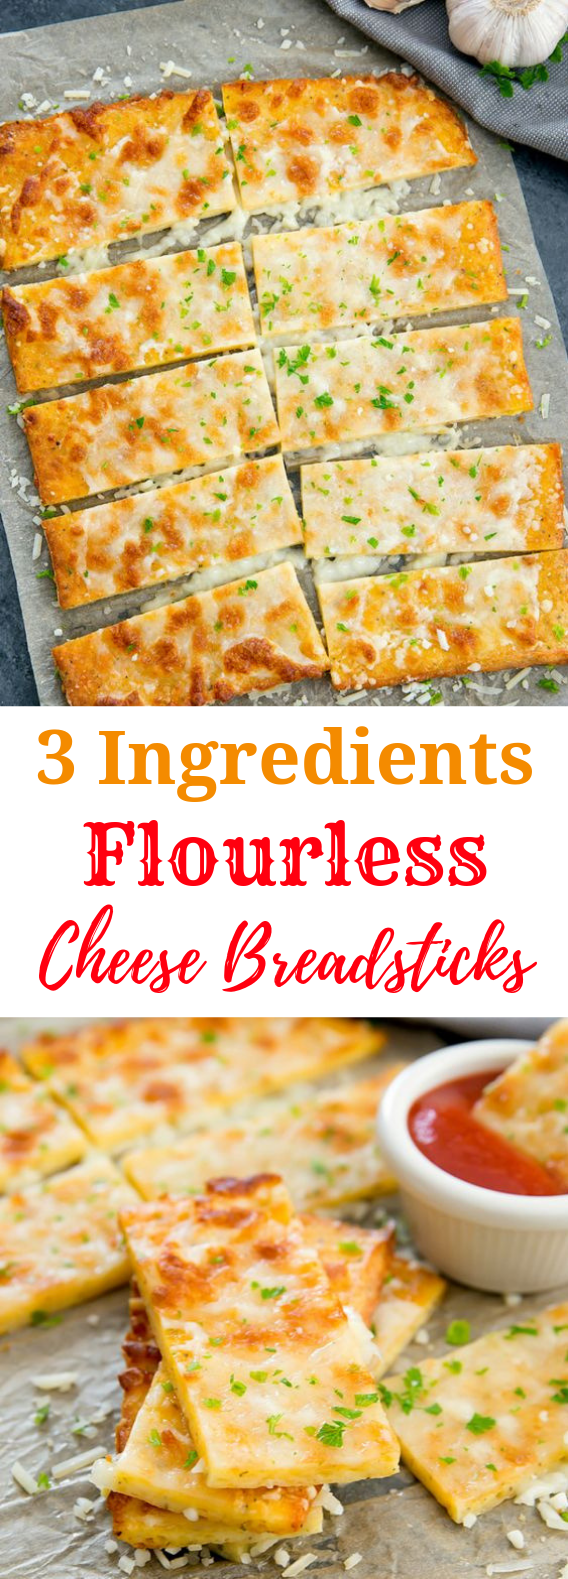 3 INGREDIENT FLOURLESS CHEESE BREADSTICKS #DietRecipe #Breadsticks